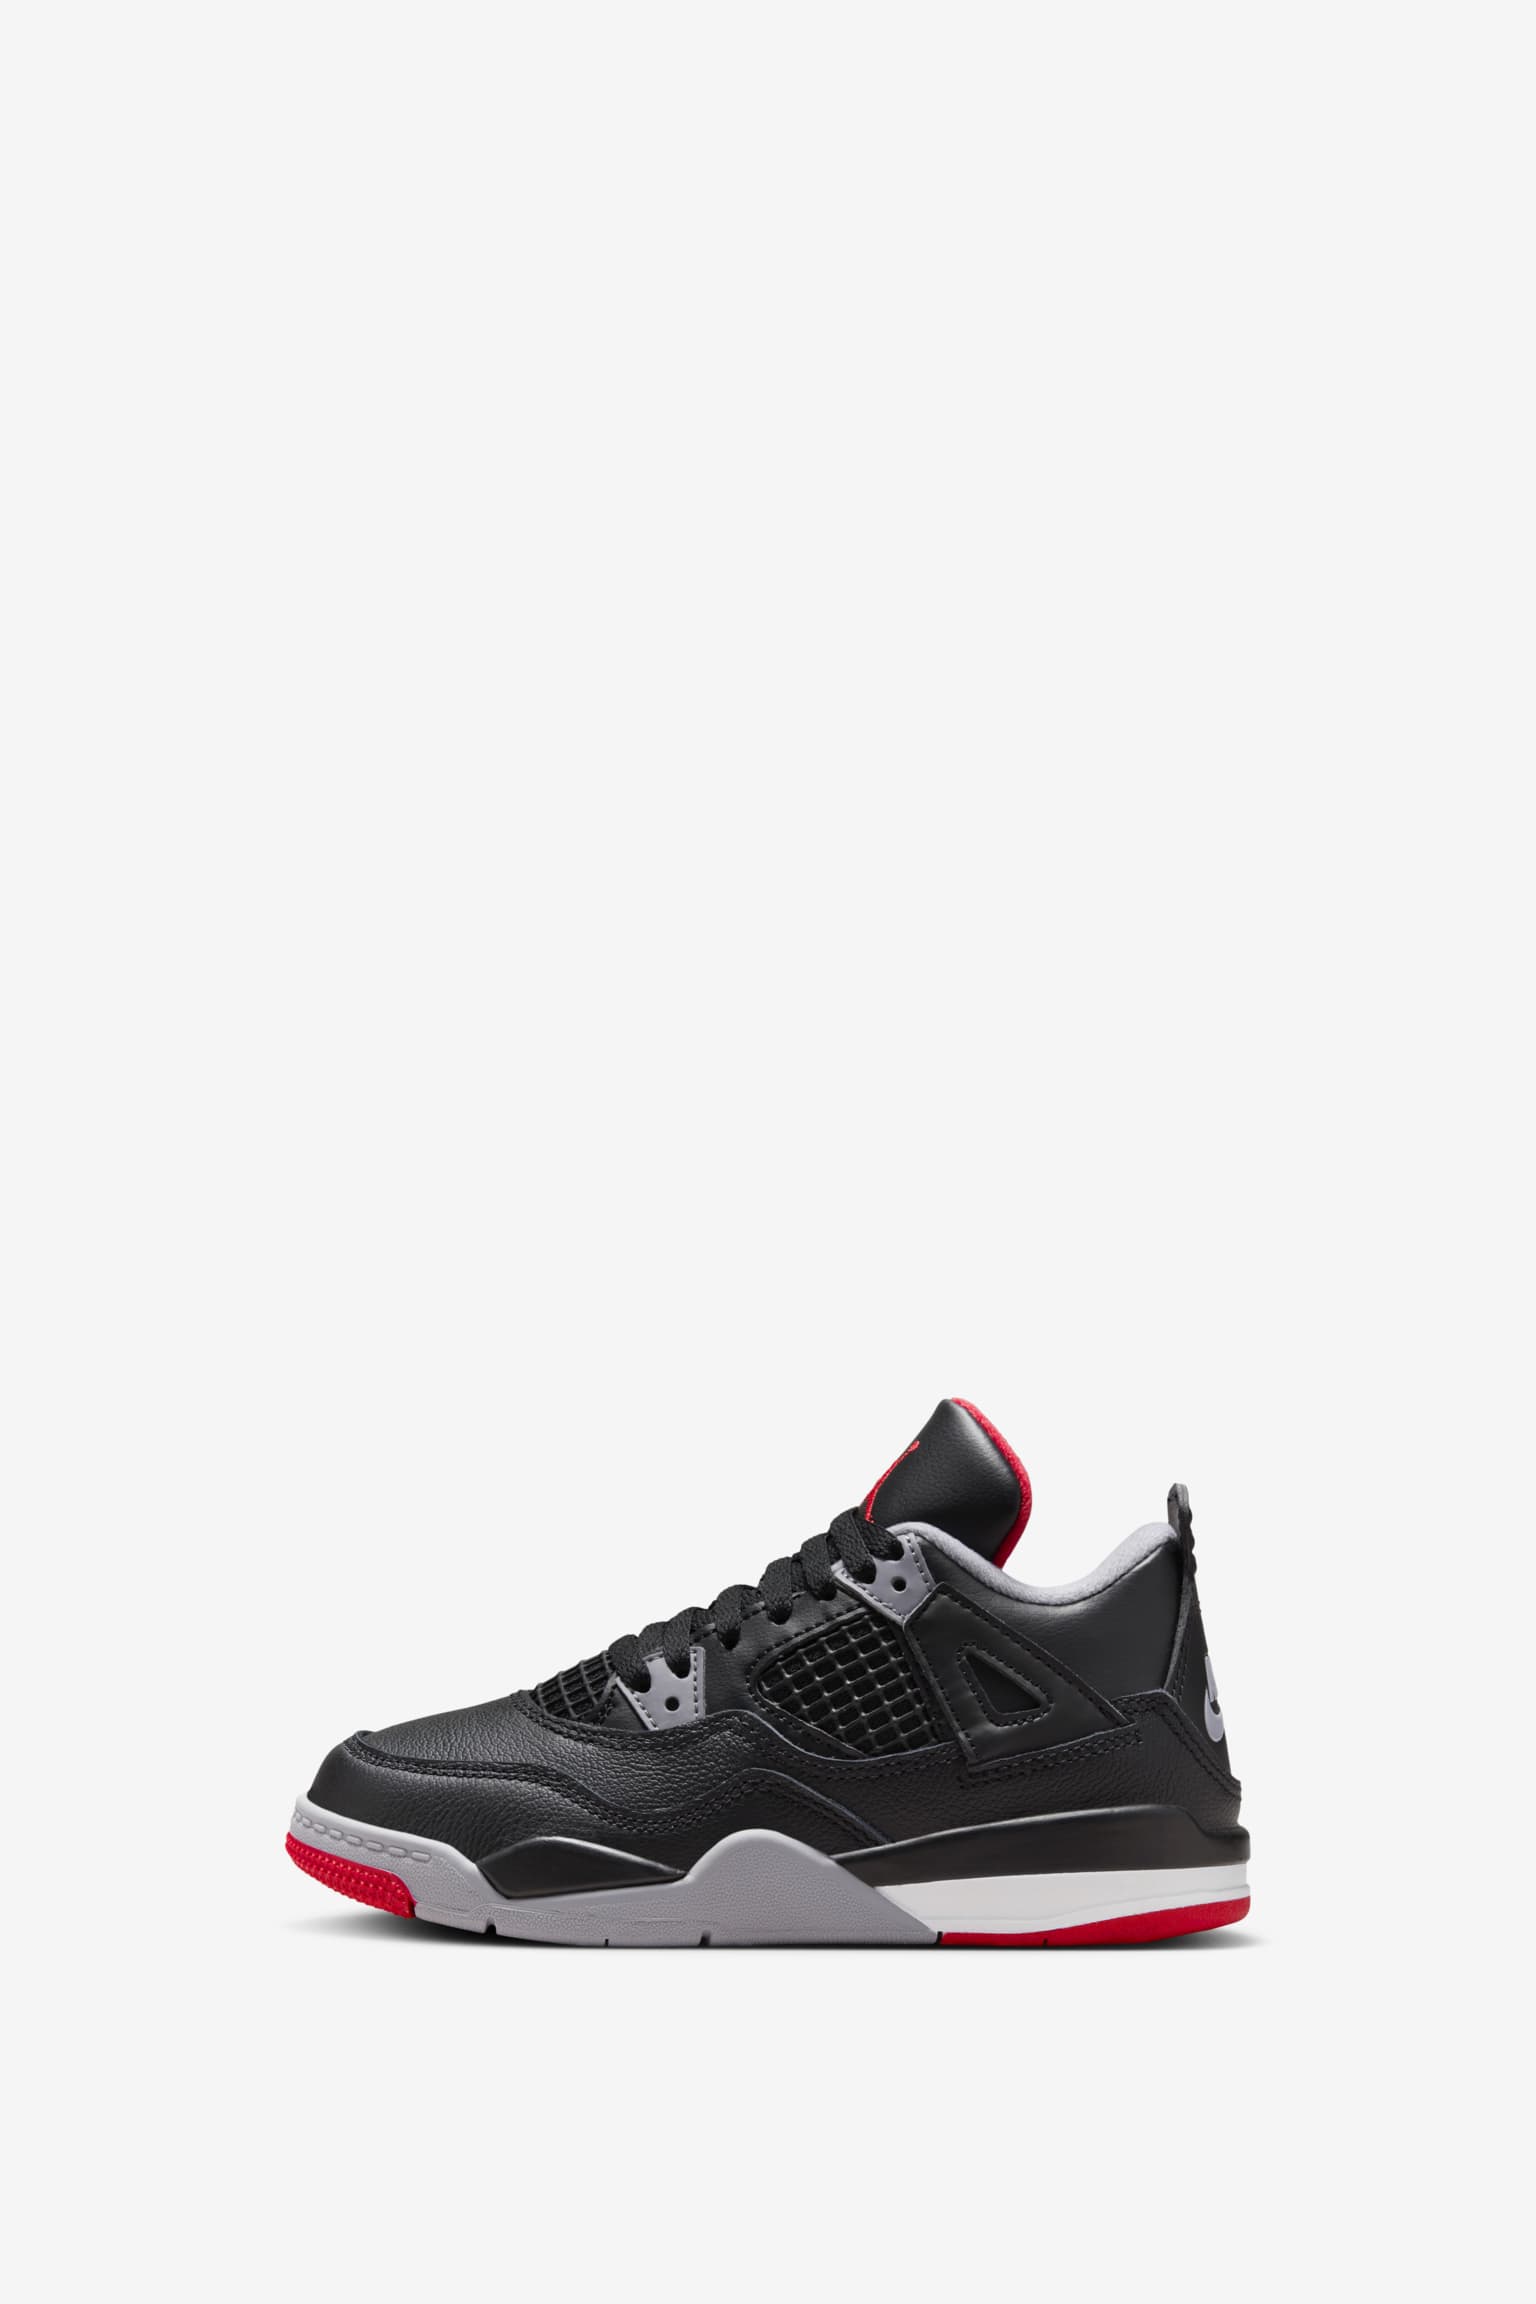 Nike Air Jordan 4 RETRO Bred Reimagined1LDK